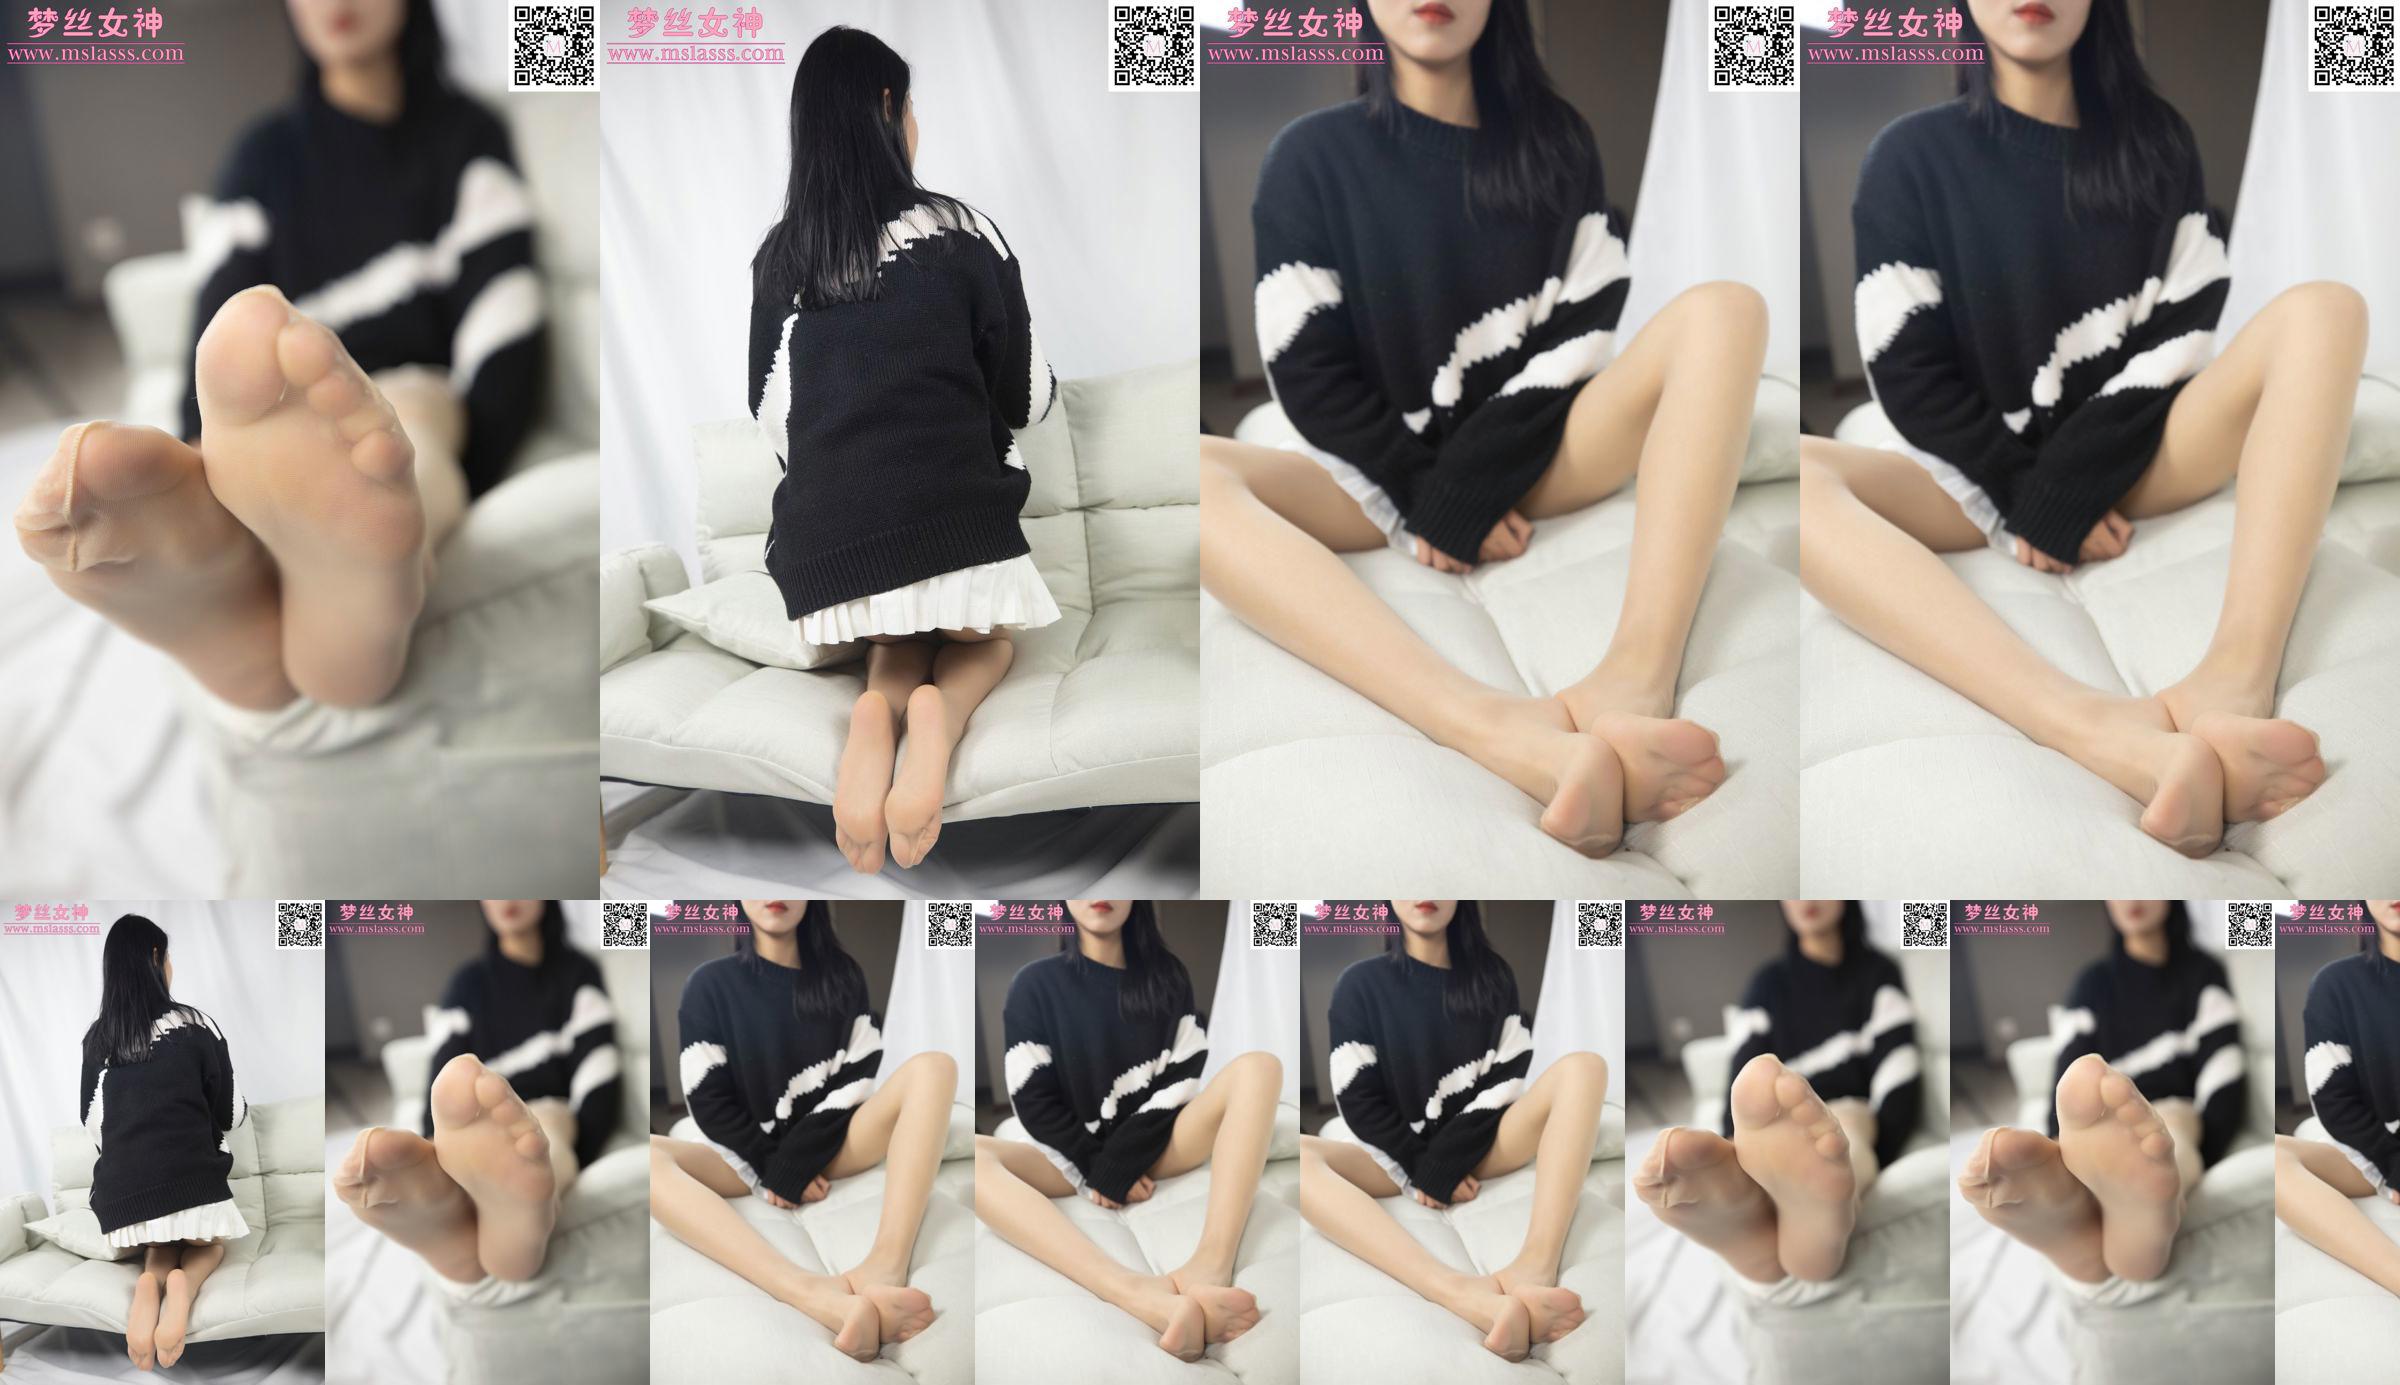 [Deusa dos Sonhos MSLASS] O suéter de Xiaomu não consegue parar suas longas pernas No.1b73f6 Página 1